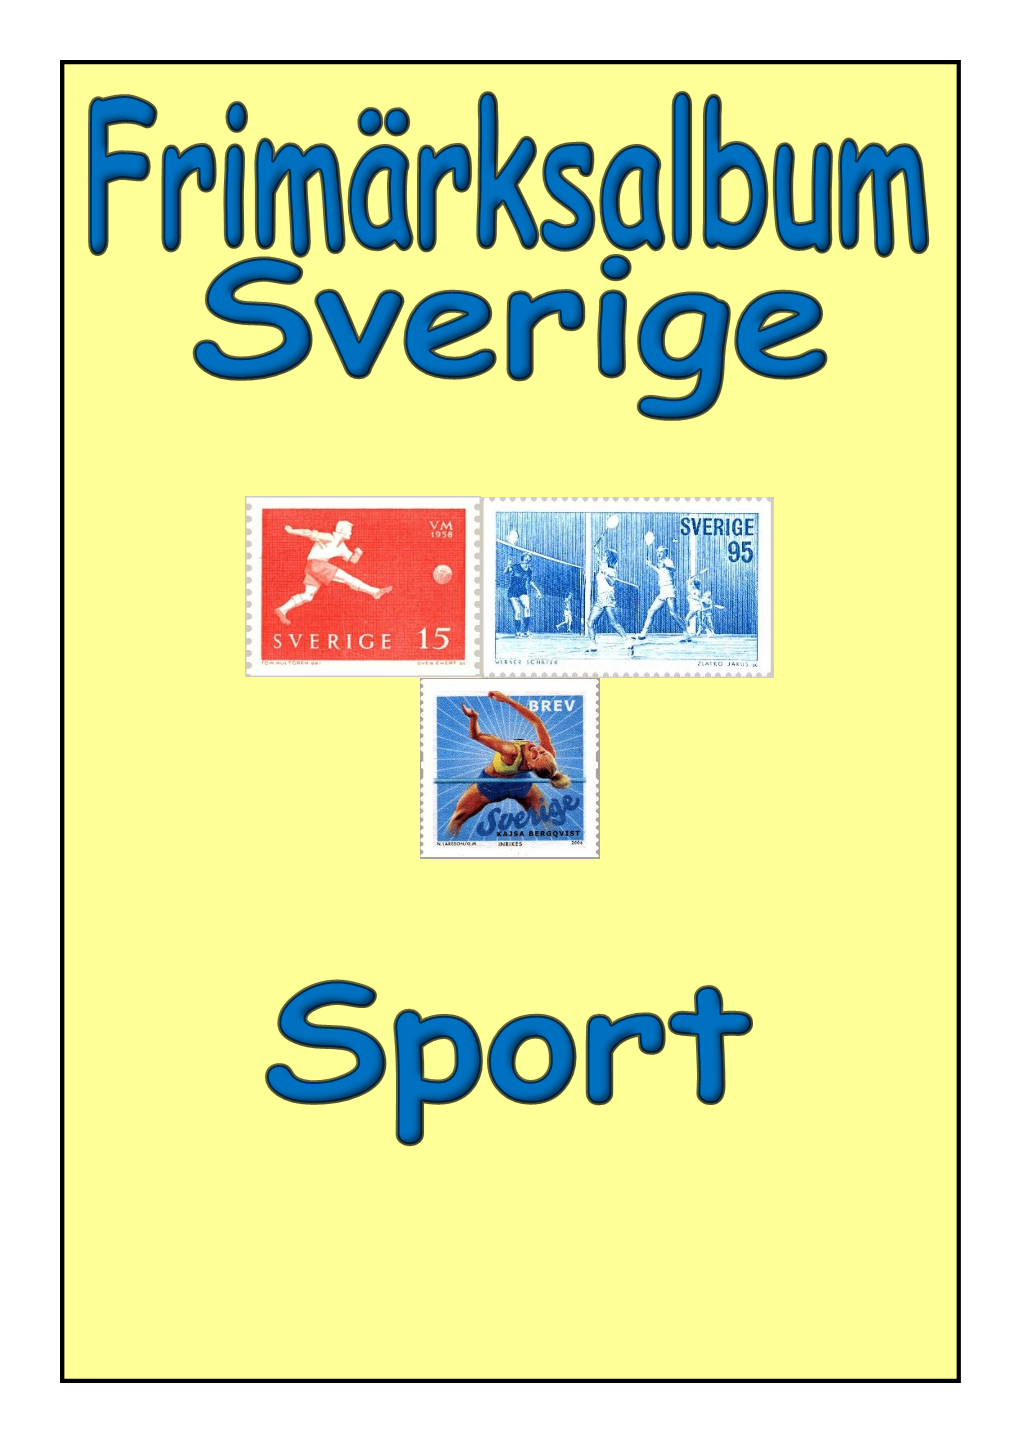 Sport.Pdf Är Upphovsrättsskyddad Enligt Svensk Och Internationell Lag